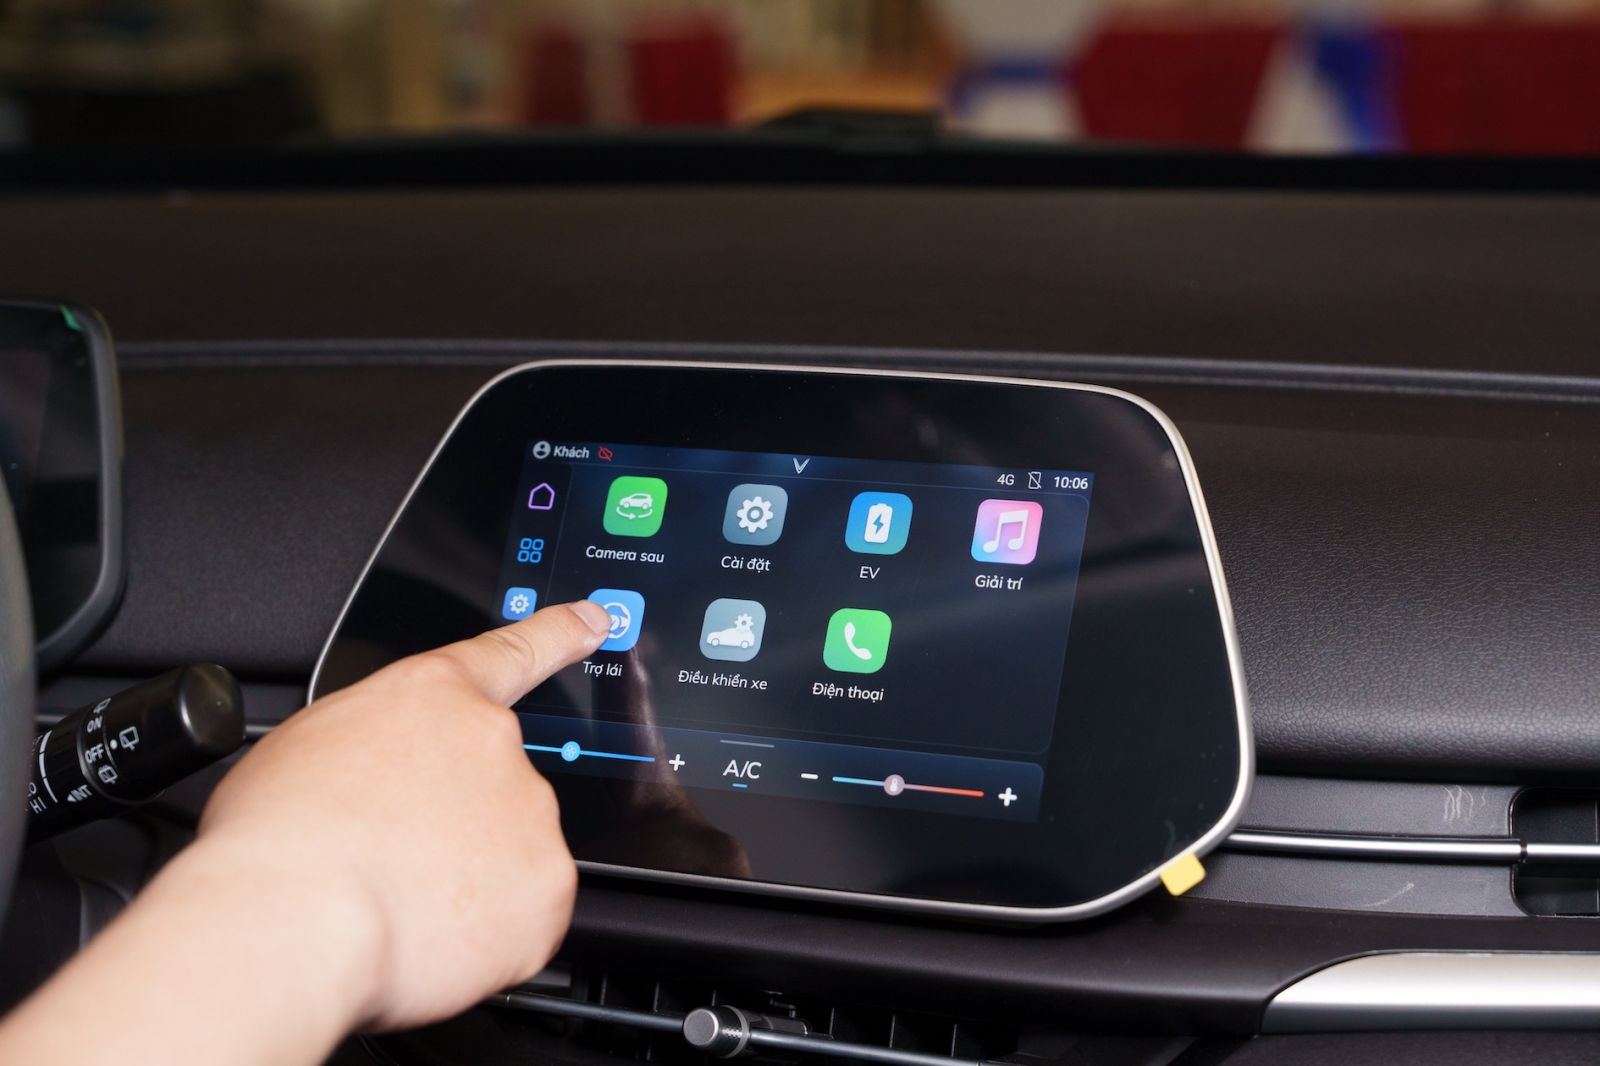 Màn hình giải trí cảm ứng 8 inch giúp người dùng quản lý và sử dụng các dịch vụ, tiện ích trên xe một cách đơn giản, nhanh chóng và hiệu quả.